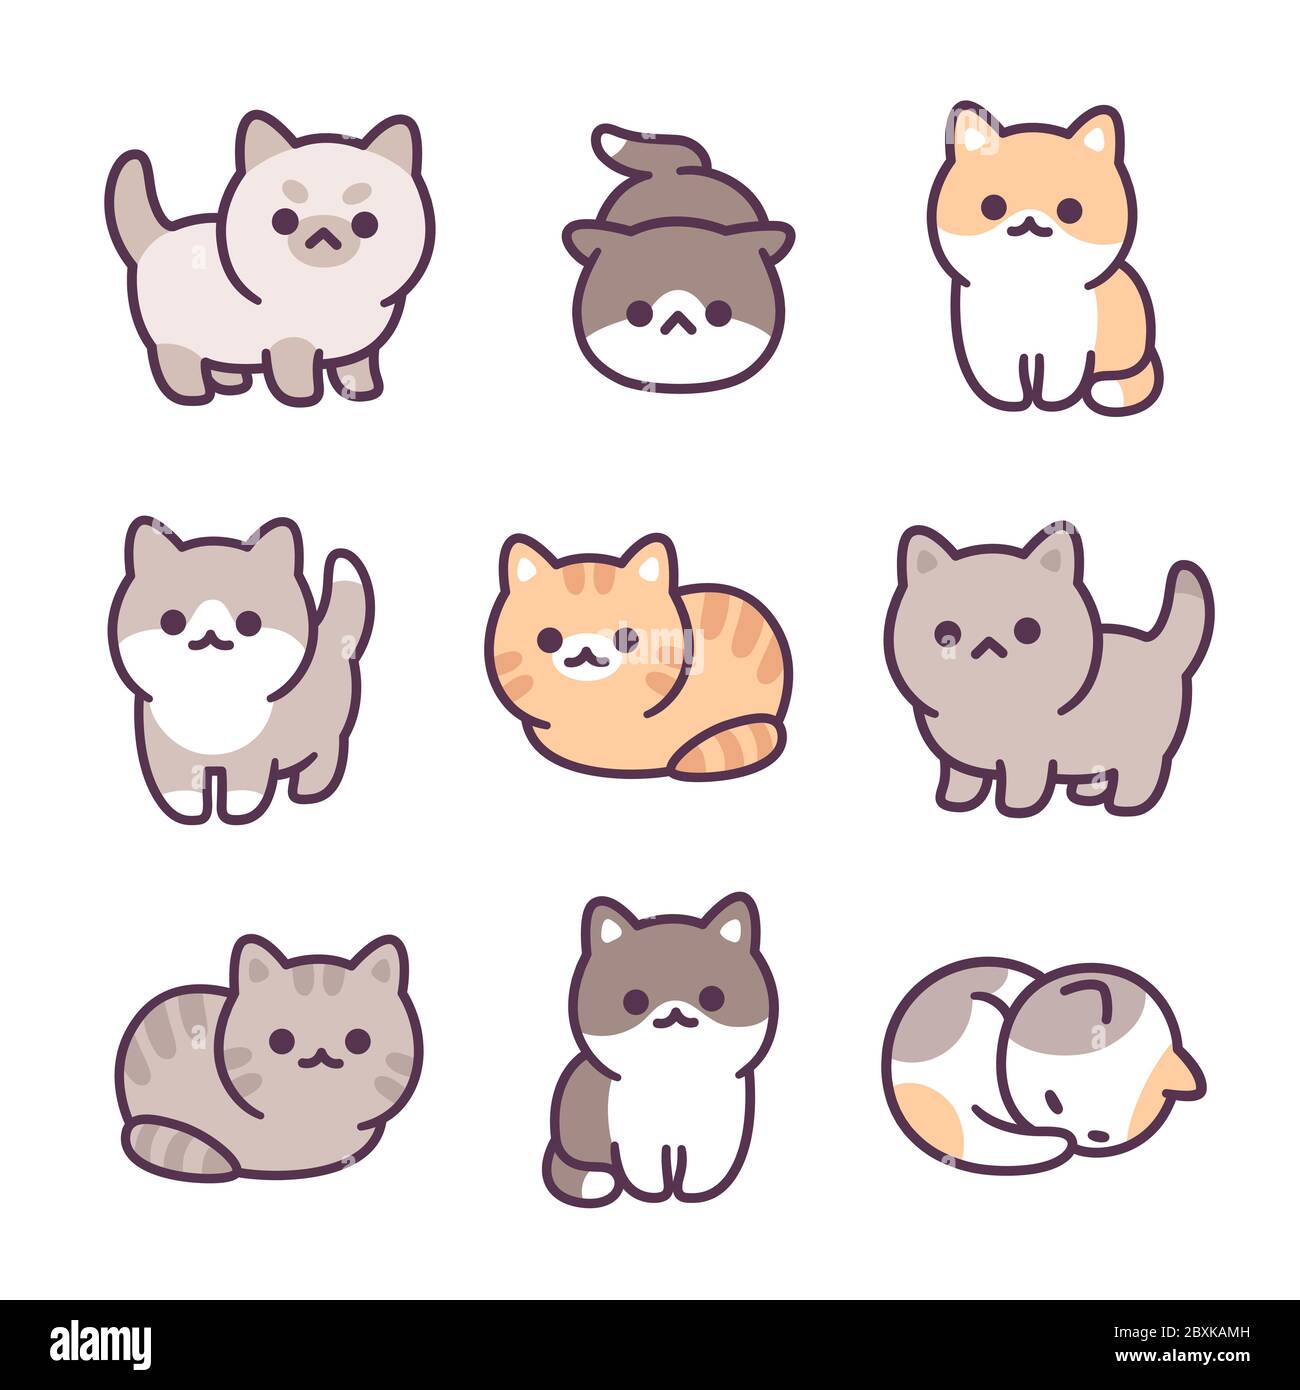 Kleine Baby Kätzchen handgezeichnete Illustration Set. Liebenswert kleine Katzen, verschiedene Rassen und Posen. Einfache Kawaii Doodle Stil. Stock Vektor